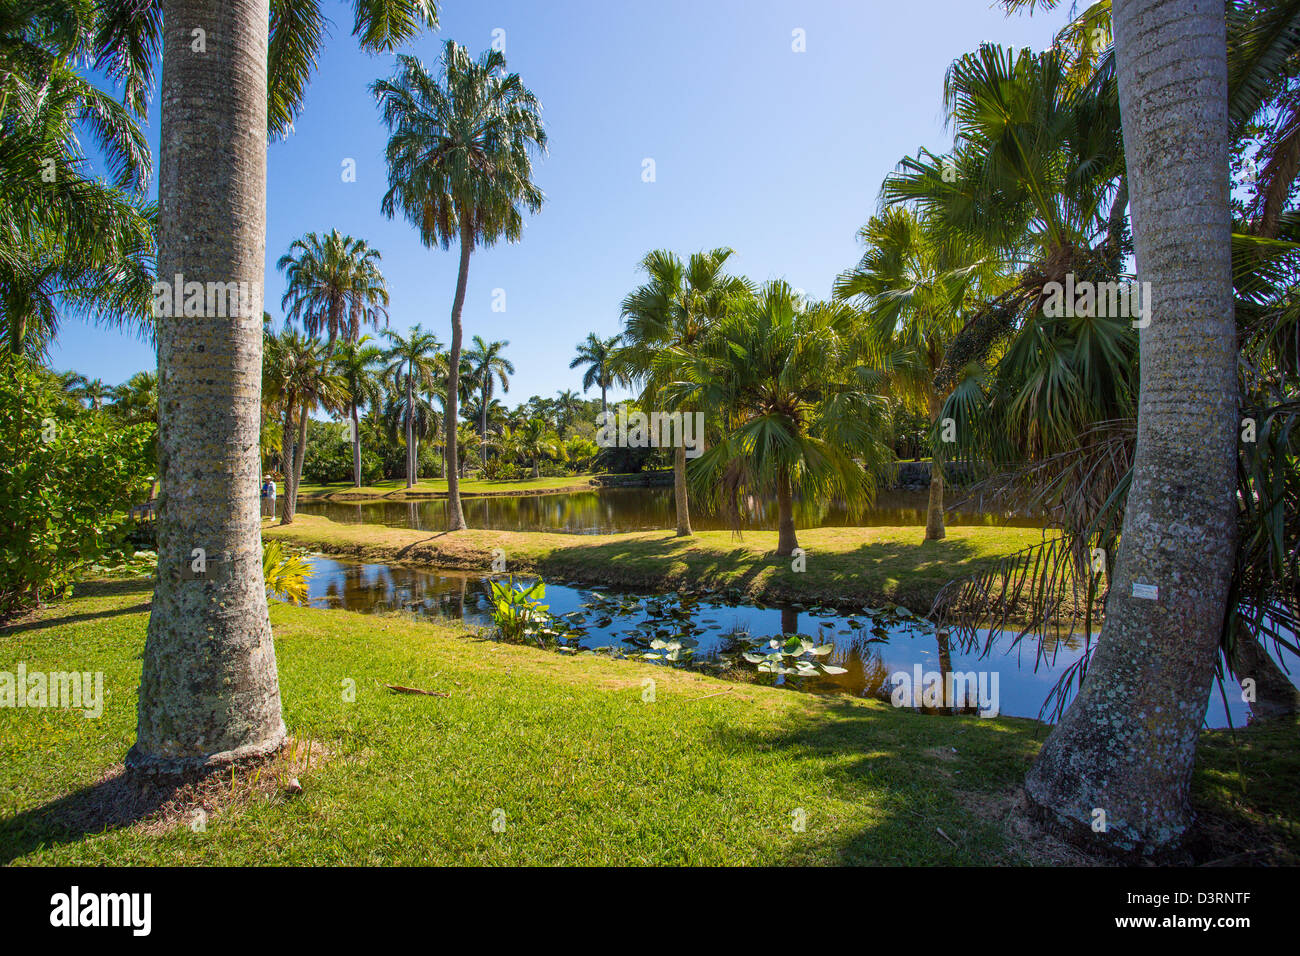 Fairchild Tropical Botanic Garden in Coral Gables in the Miami area of Florida Stock Photo